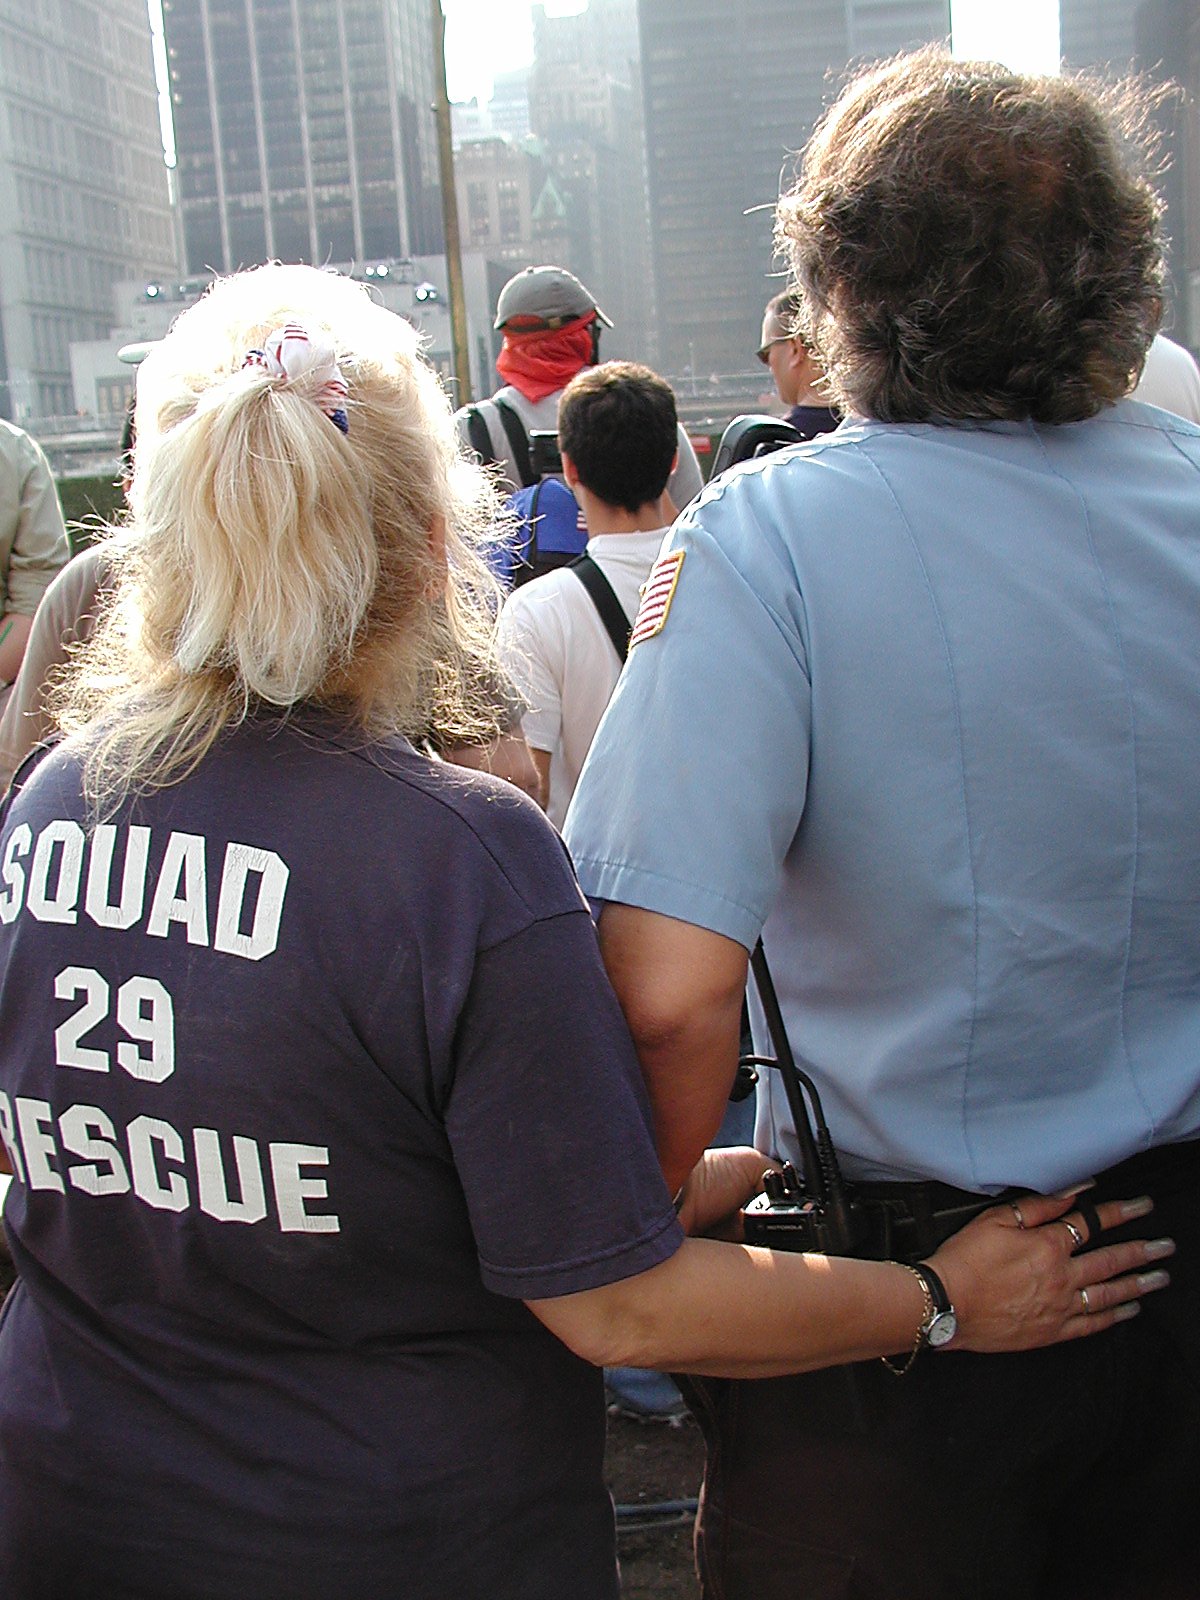 rescue squad.jpg